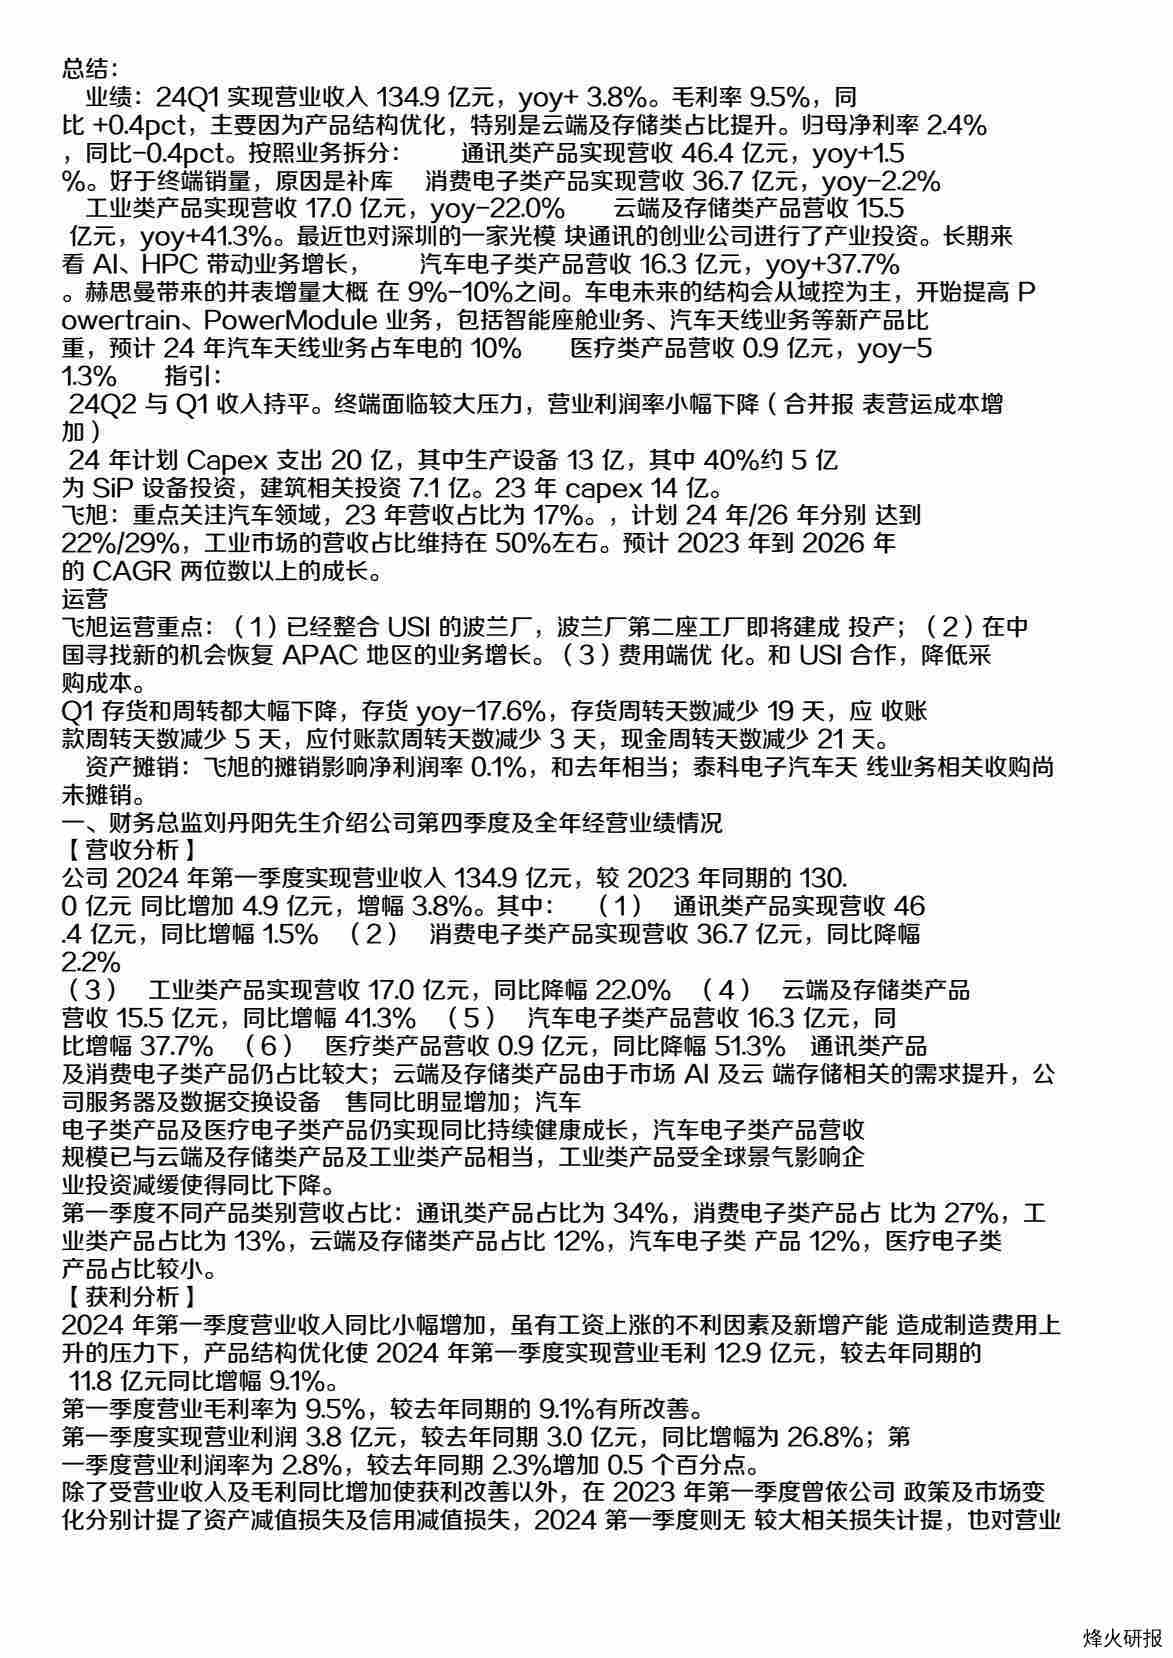 环旭电子(601231)24Q1业绩交流会-调研纪要.pdf-第一页